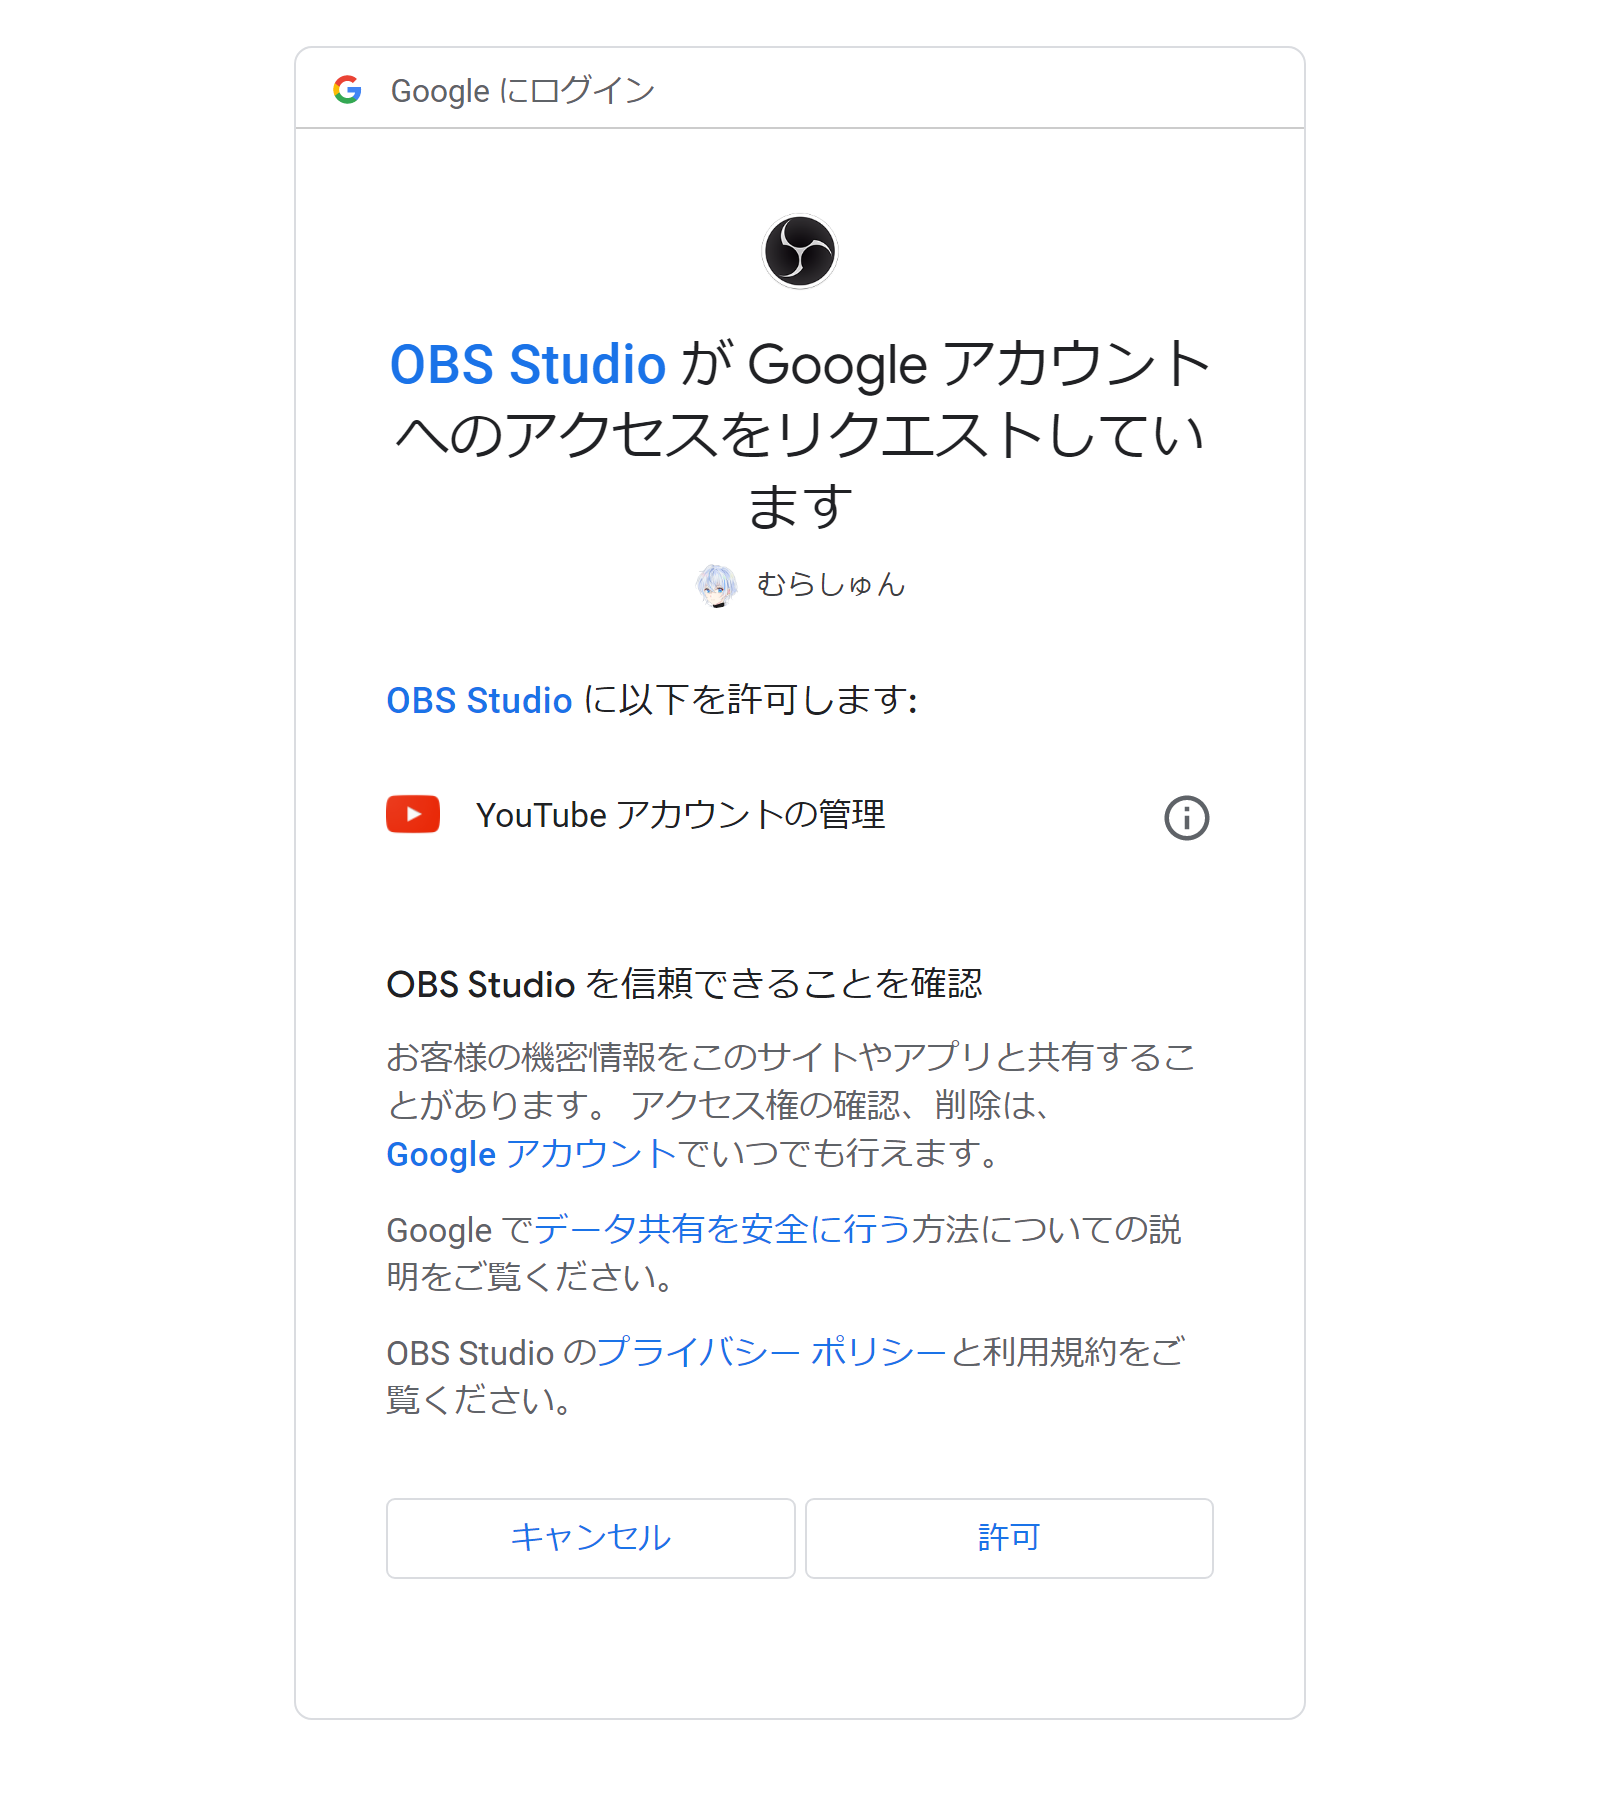 Google アカウント（YouTube アカウントの管理）への許可を OBS に与える